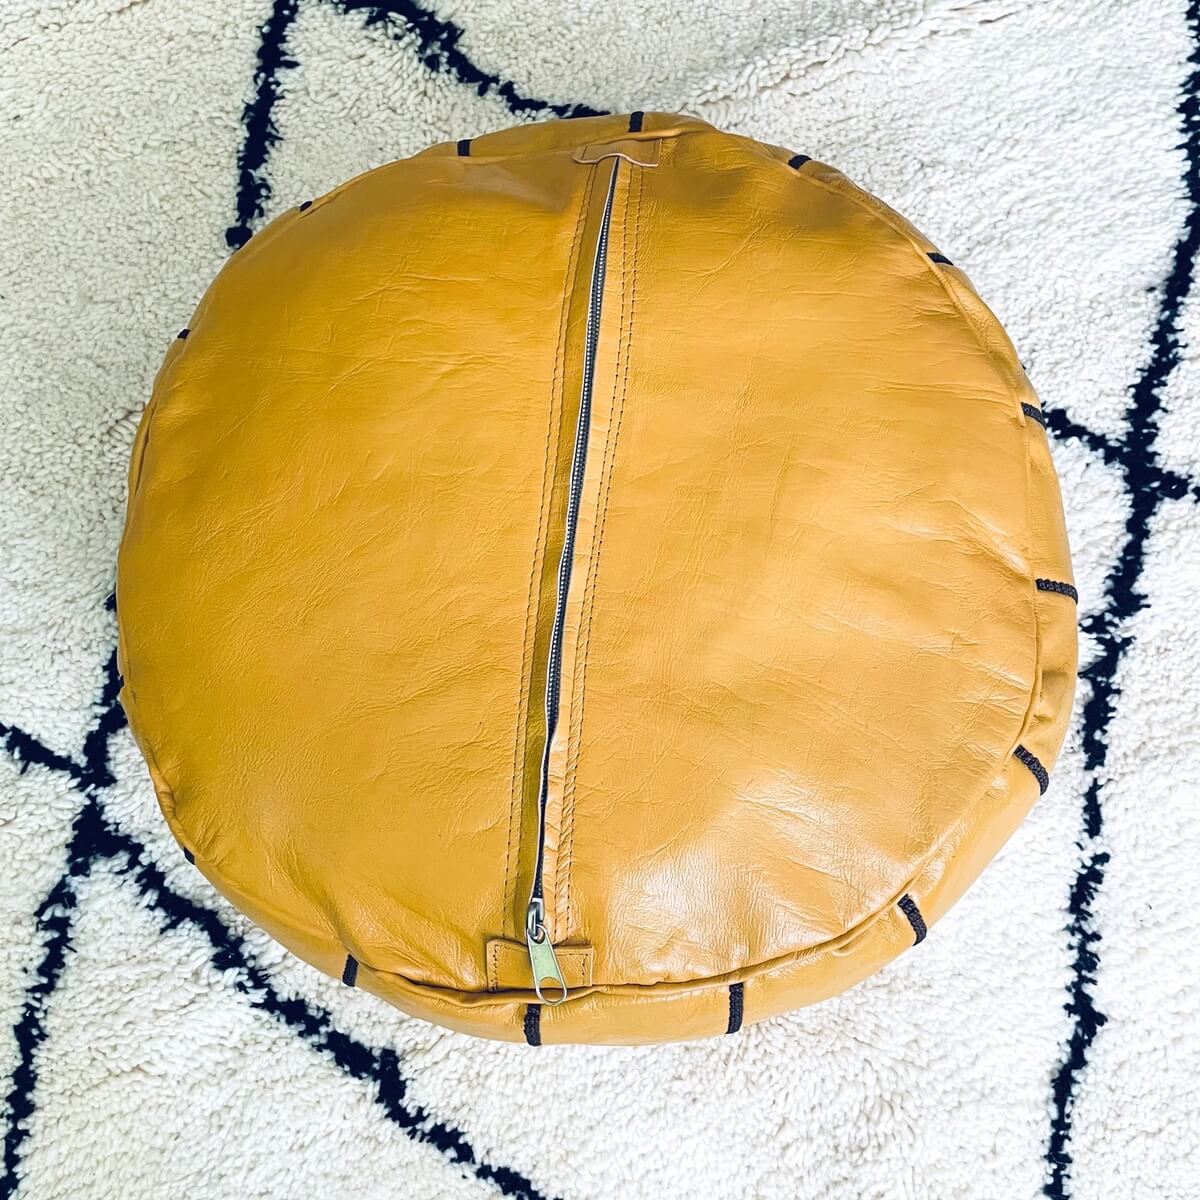 taburet puf marocan din piele naturala creat si vopsit manual de artizani din maroc in culoarea mustar cu broderie contrastanta